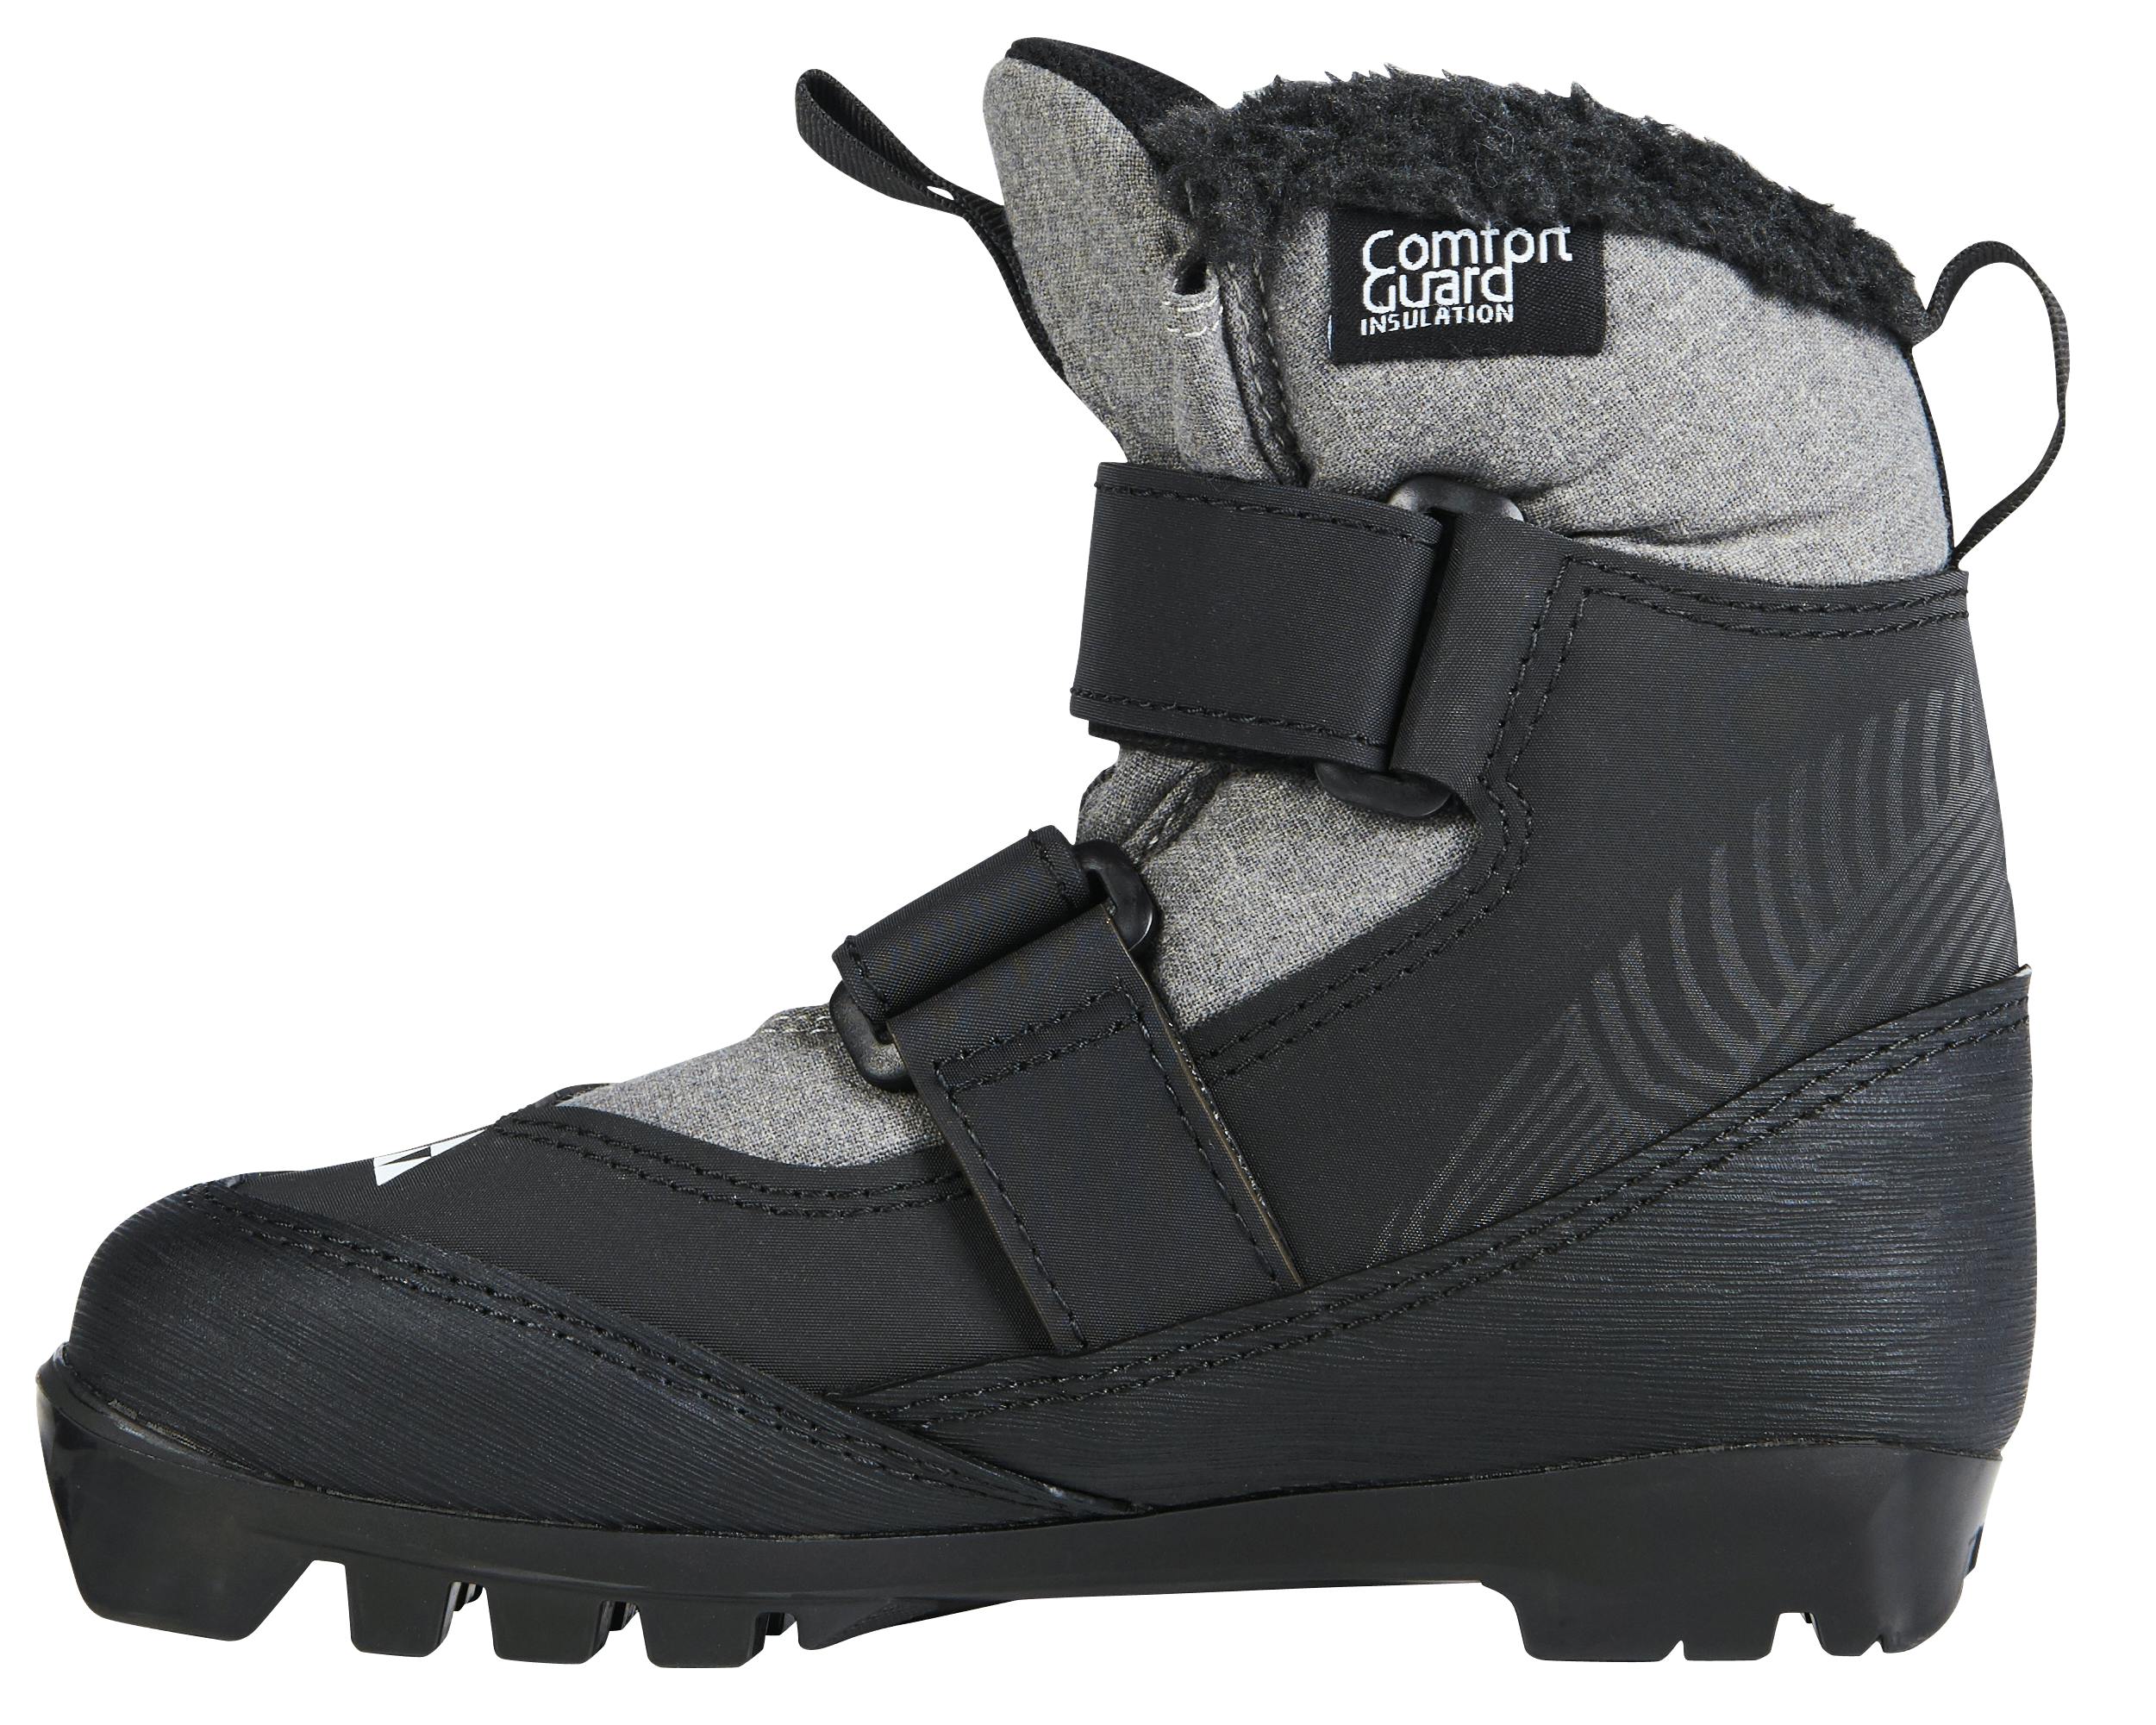 Fischer Snowstar Ski Boots · Kids' · 2023 · 25